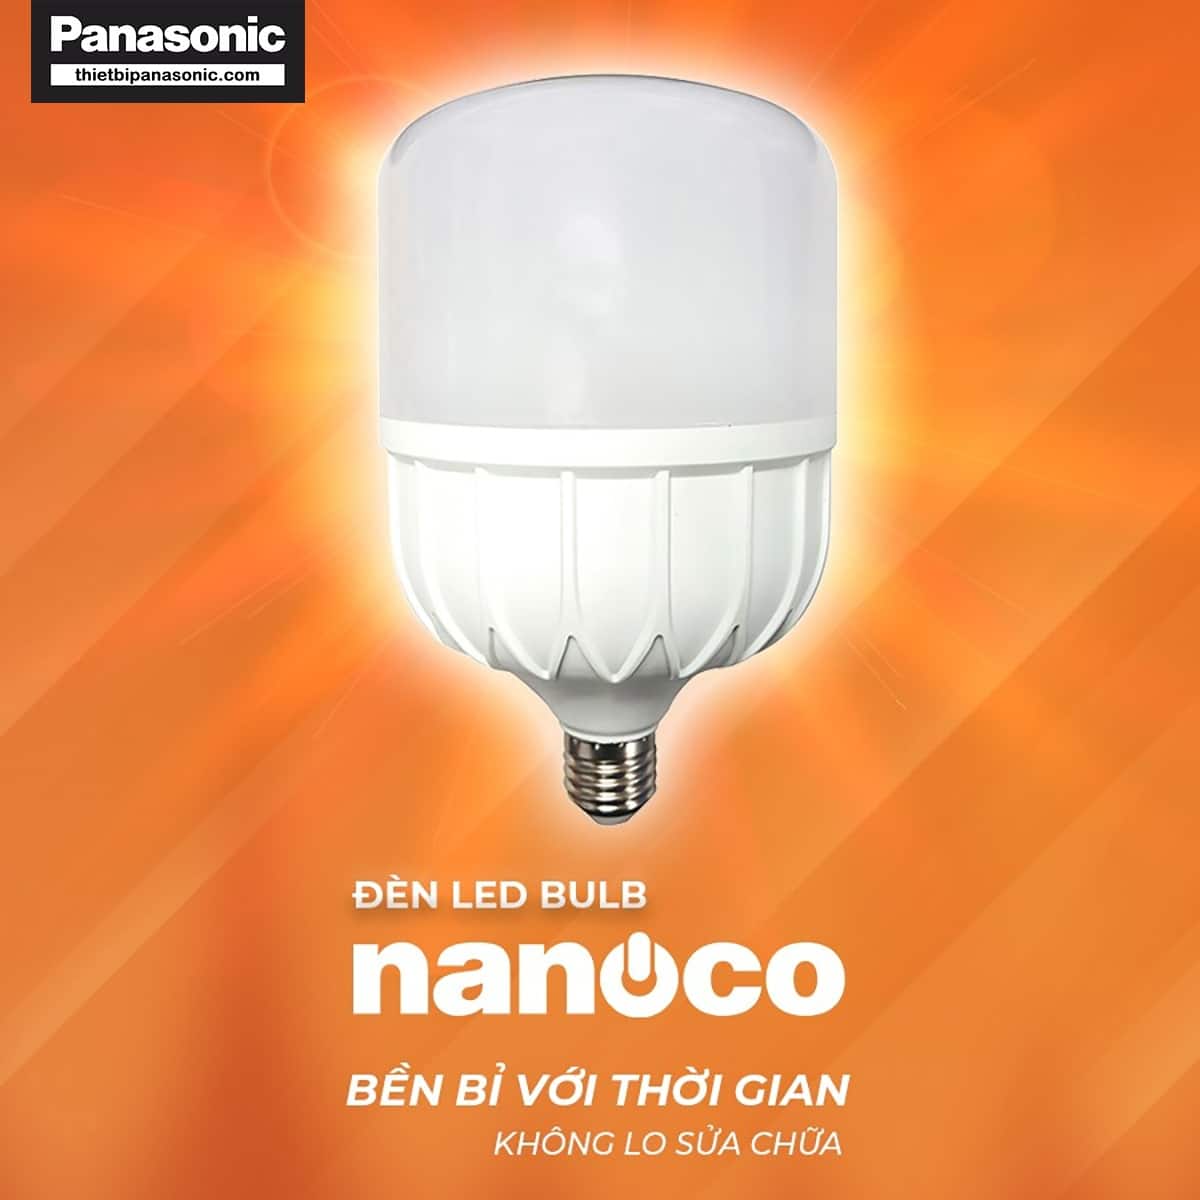 Bóng đèn LED bulb 50W Nanoco NLB506, NLB504, NLB503 bền bỉ với thời gian không lo sửa chữa